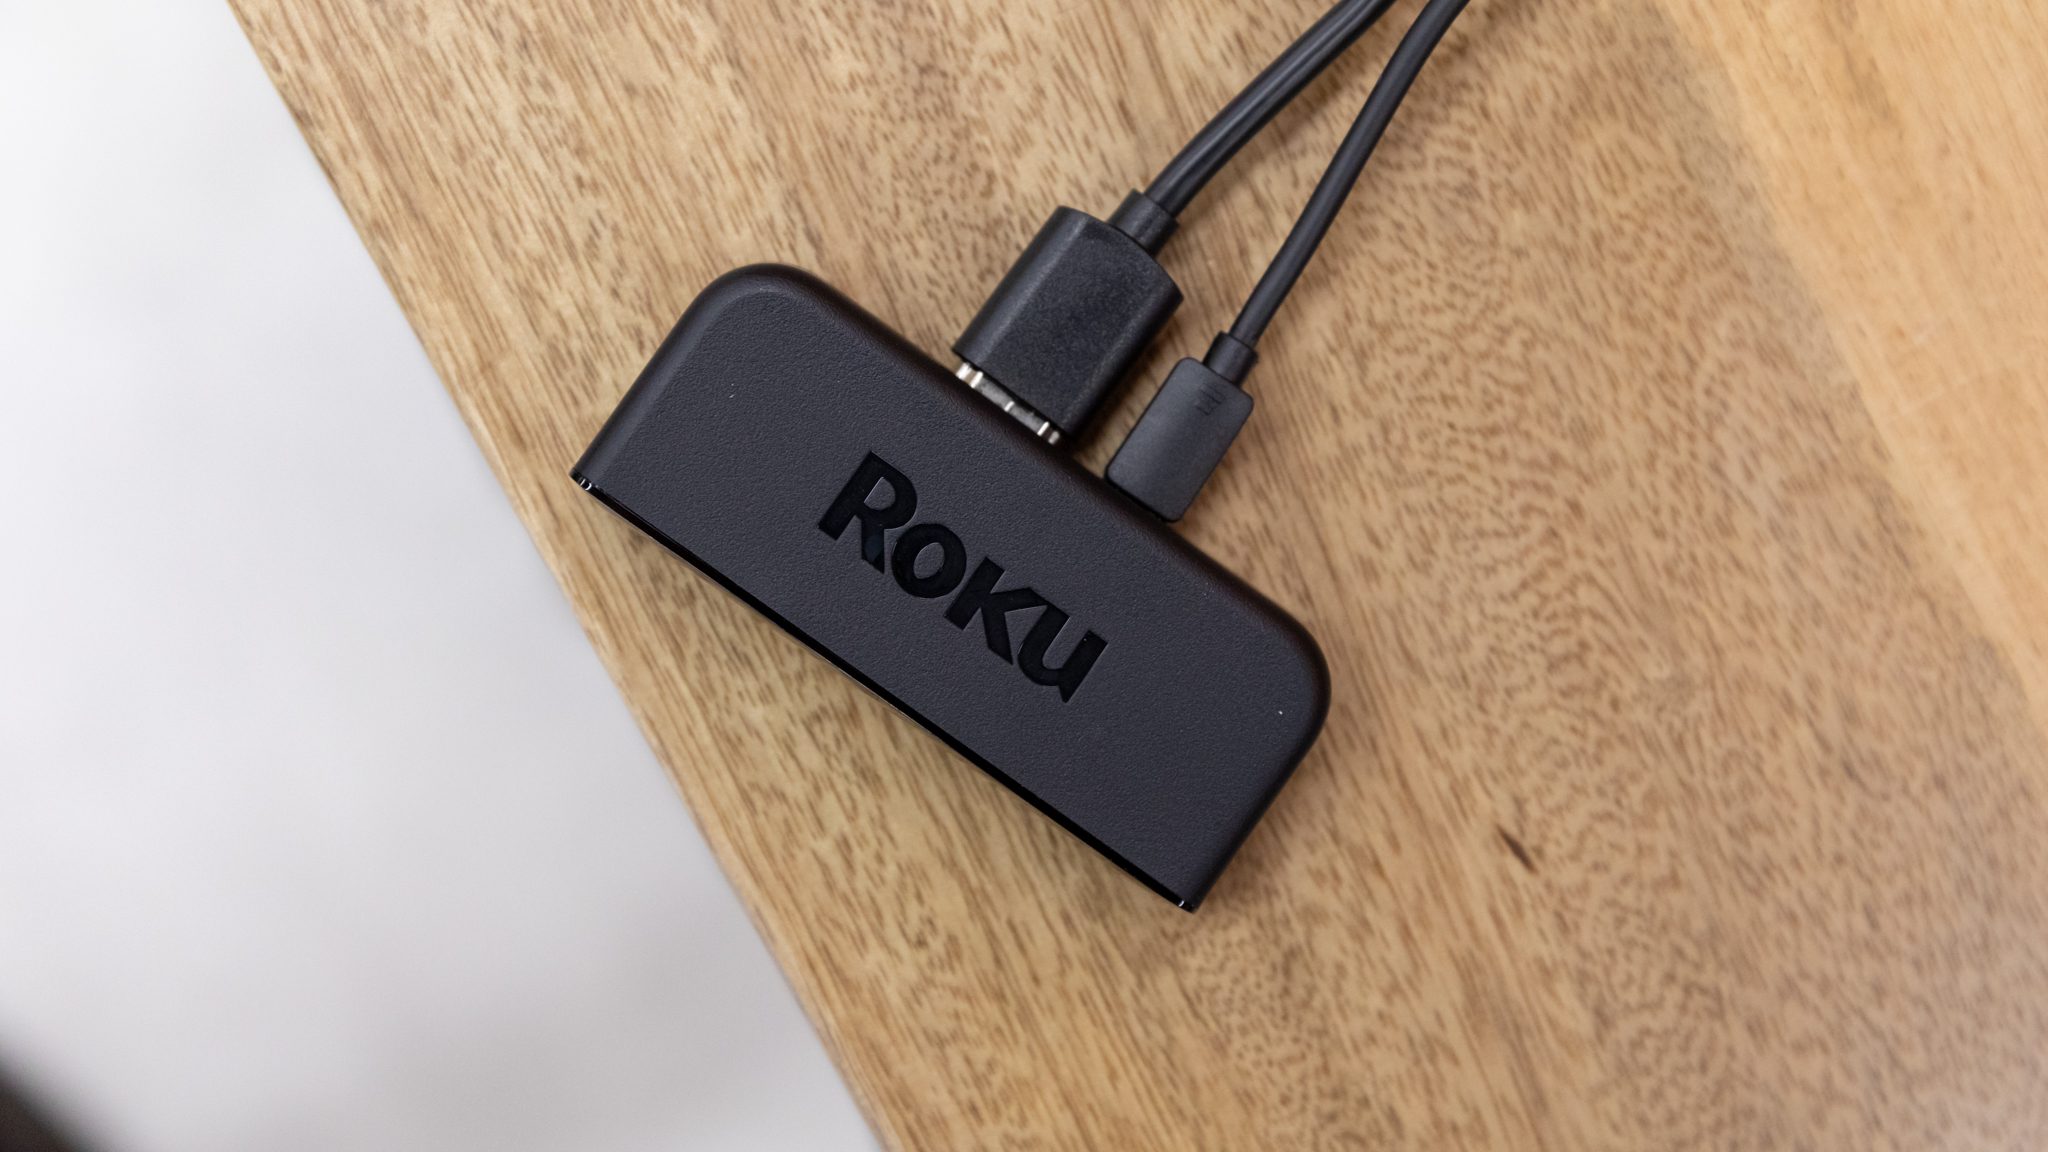 Đánh giá Roku Premiere: Công cụ truyền phát 4K rẻ nhất hiện nay thậm chí còn rẻ hơn